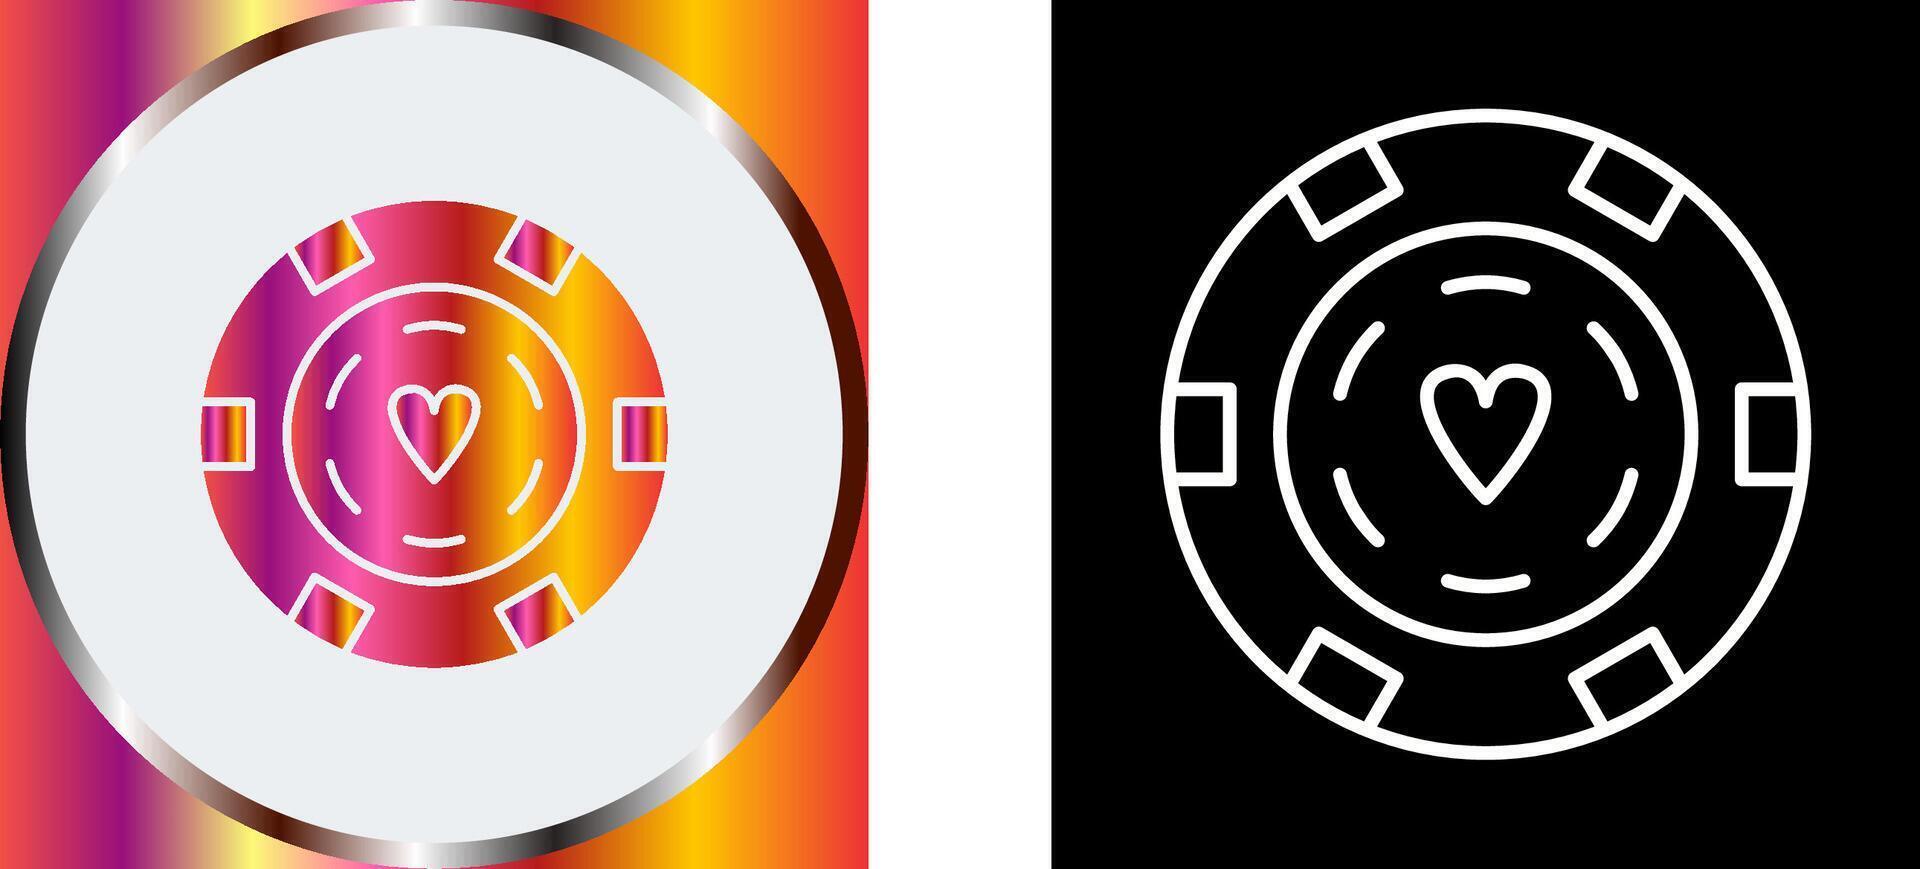 Unique Poker Chips Icon Design vector